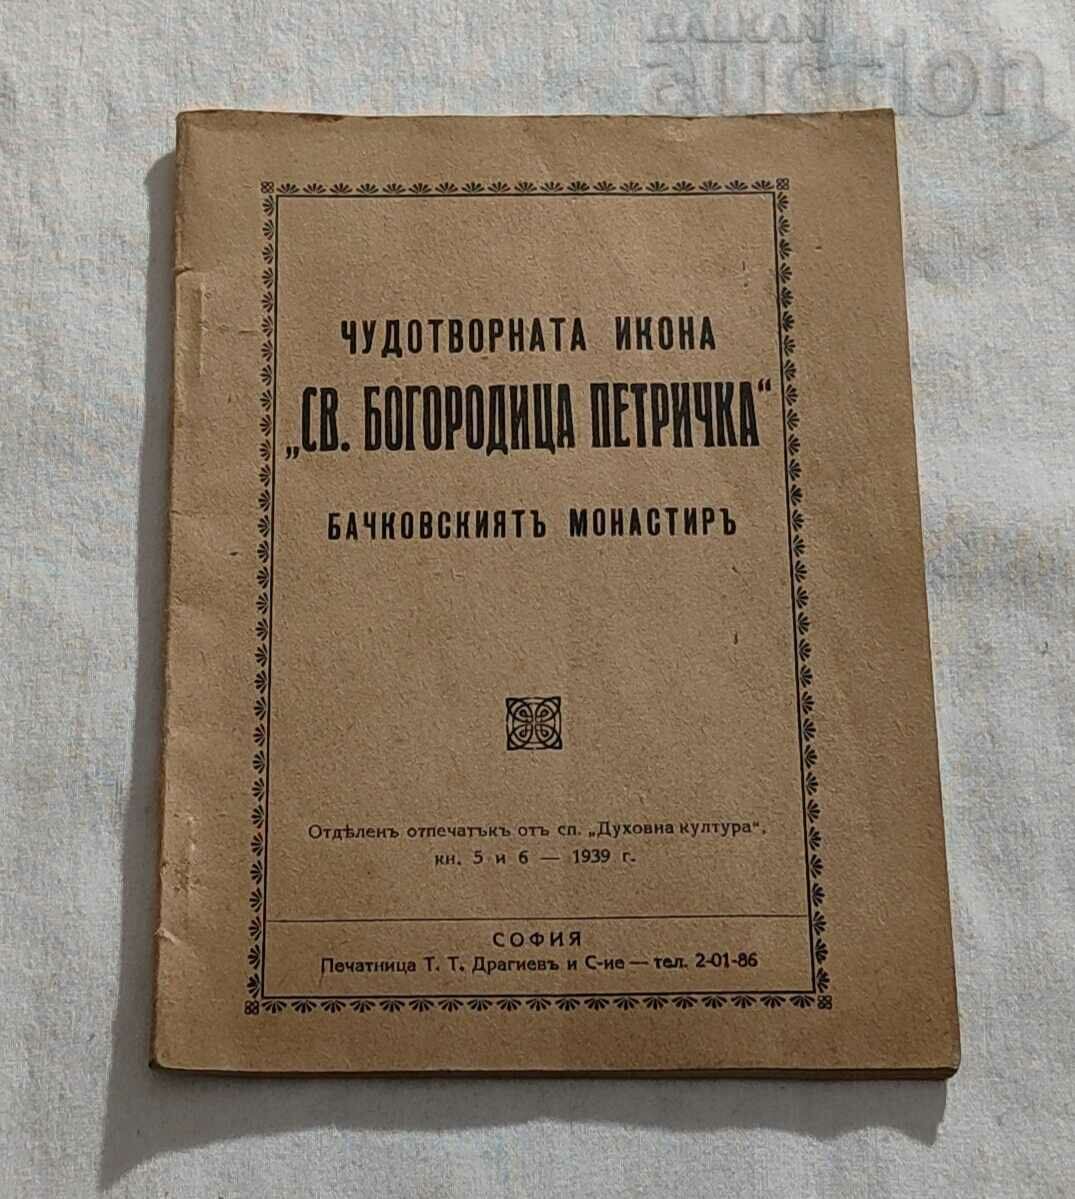 ICONOA MIRACULOASA "SF. FECIOARA PETRICHKA" BACHKOVSKI MA 1939